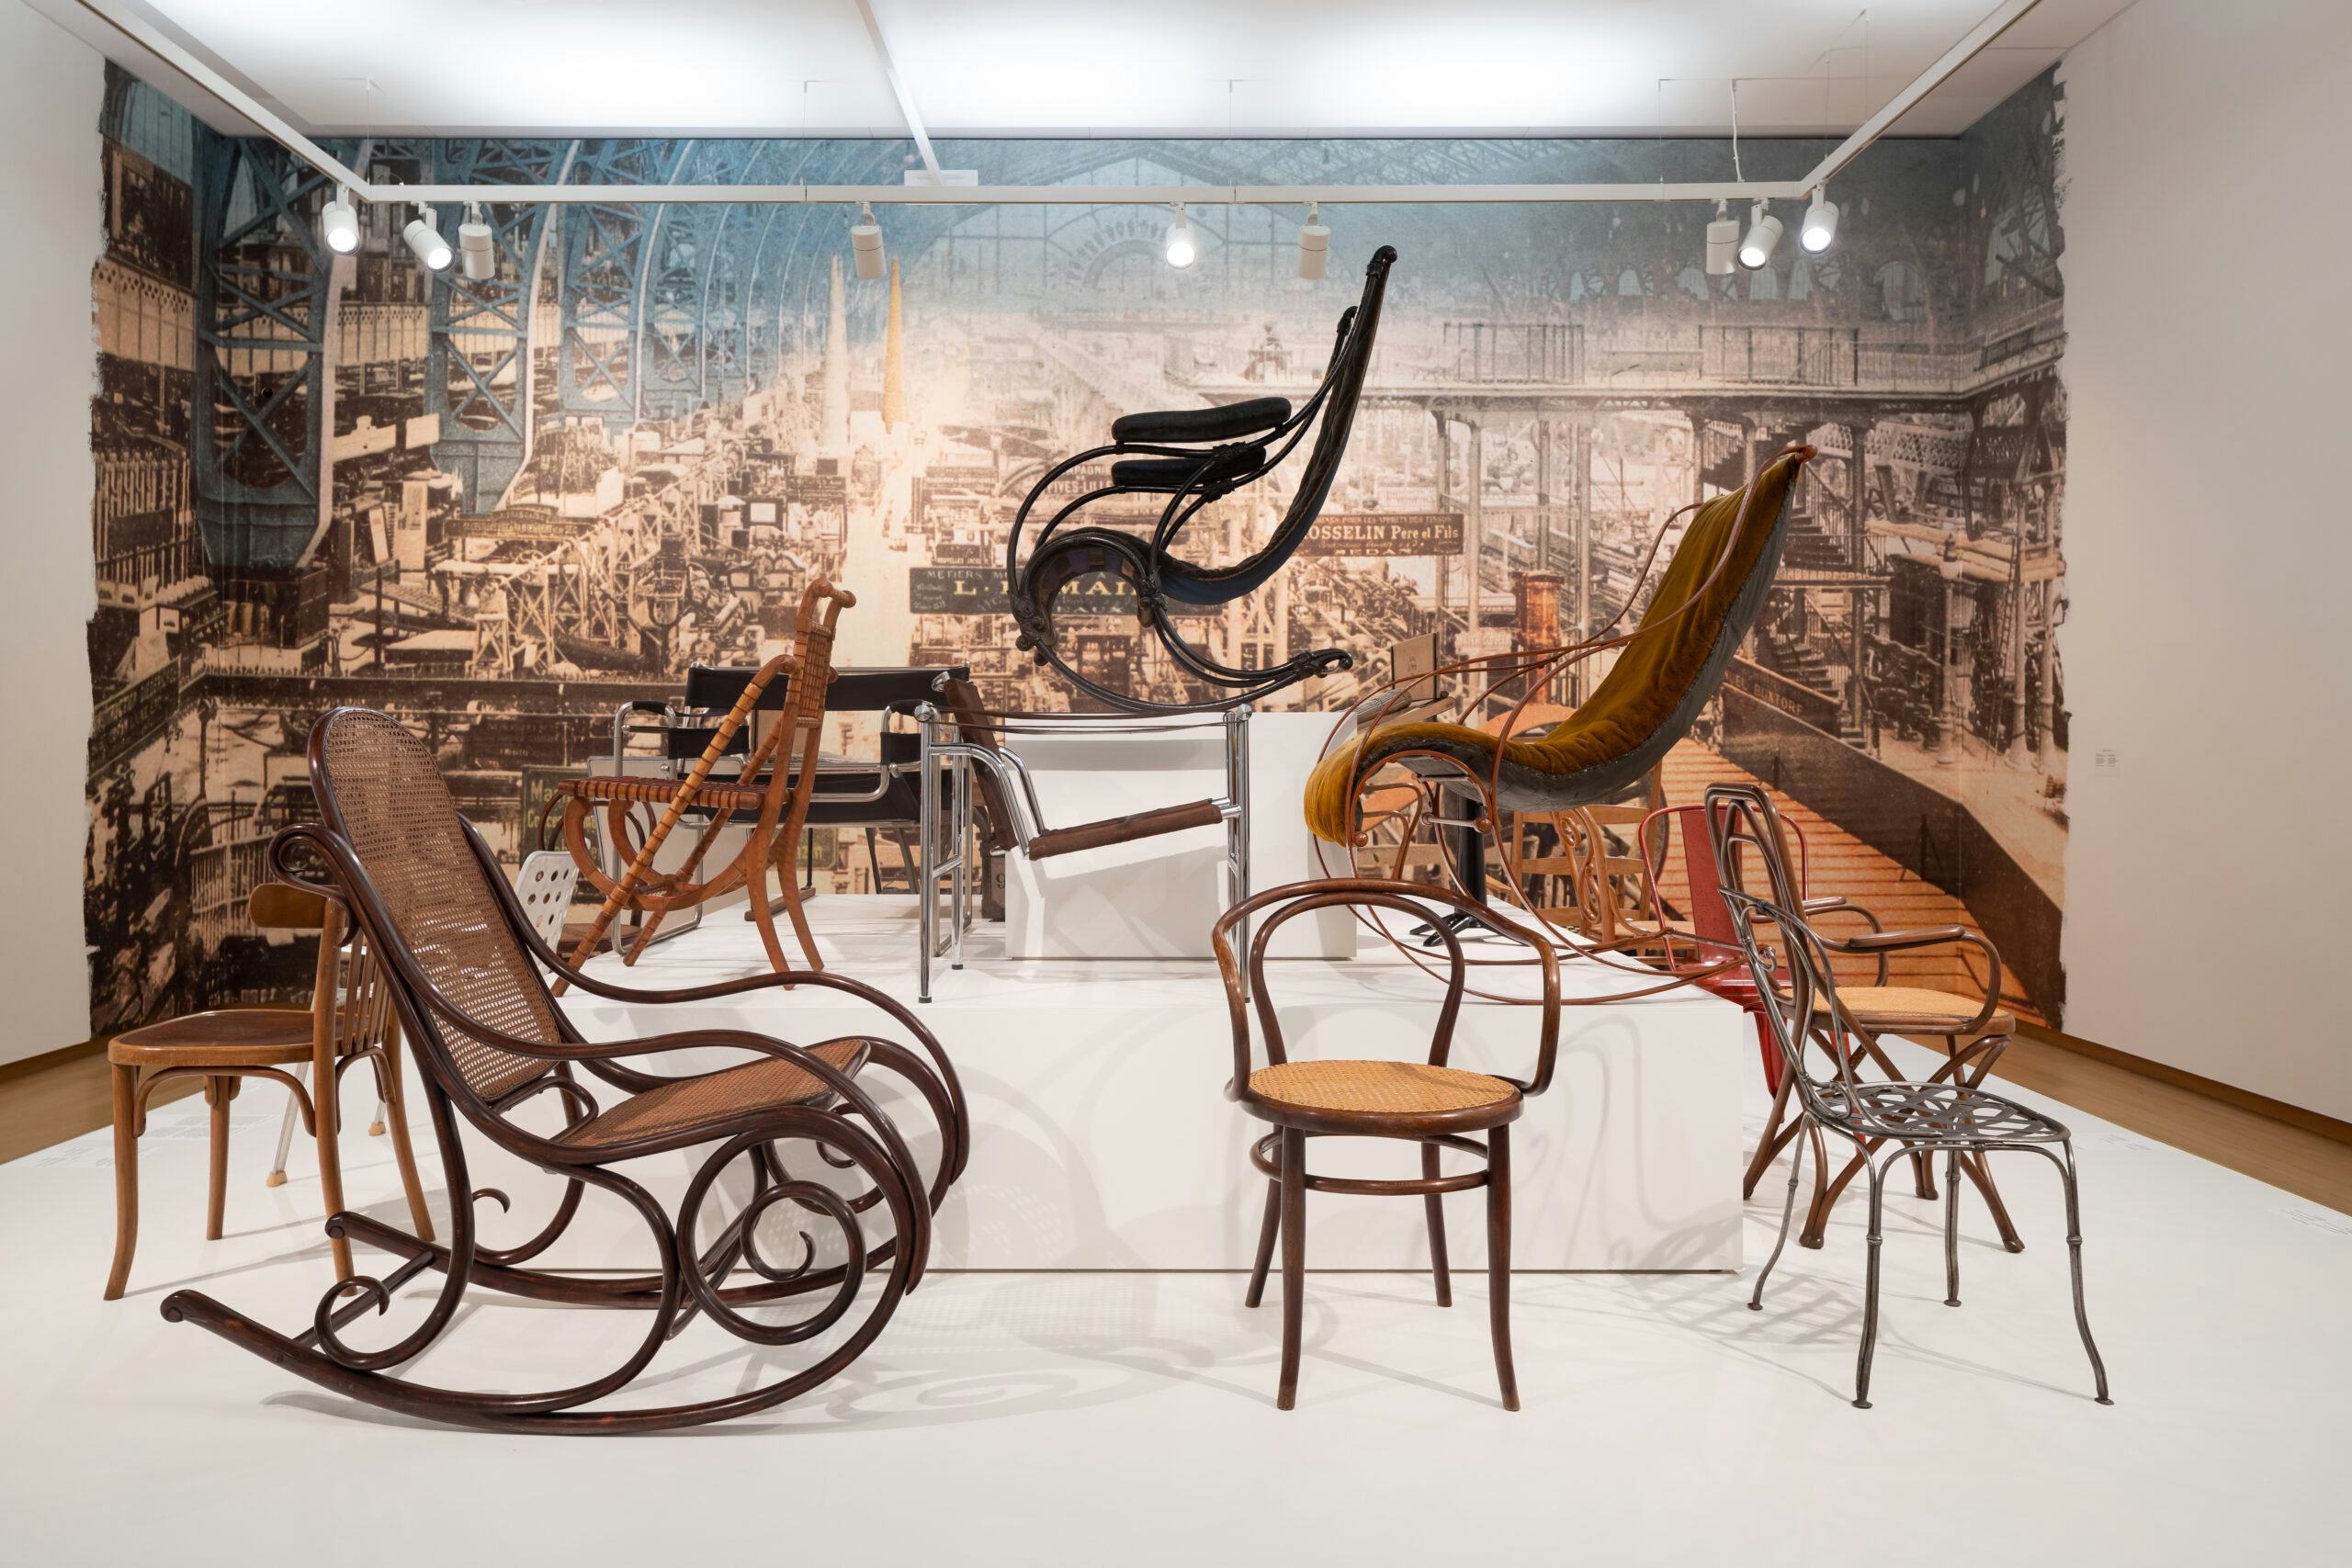 Presentatie van o.a. Thonet stoelen in MODERN. Beeld Stedelijk Museum Amsterdam.